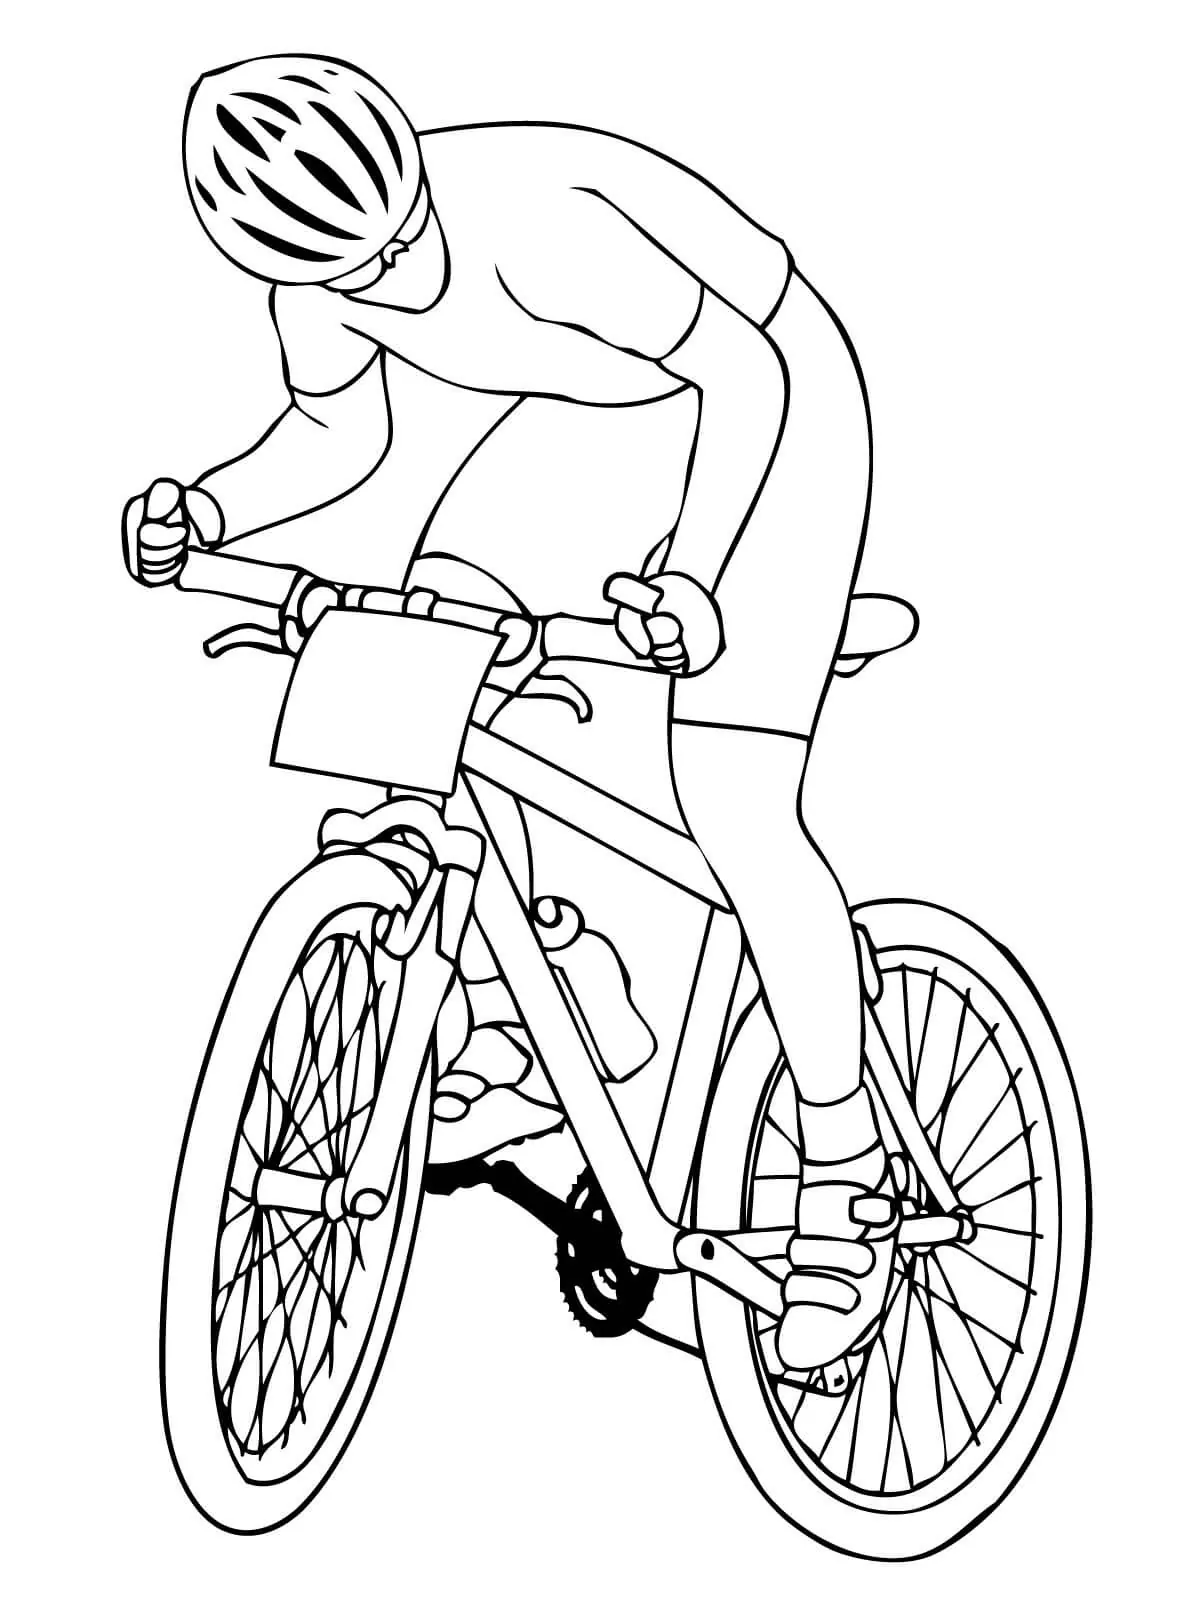 A Cyclist